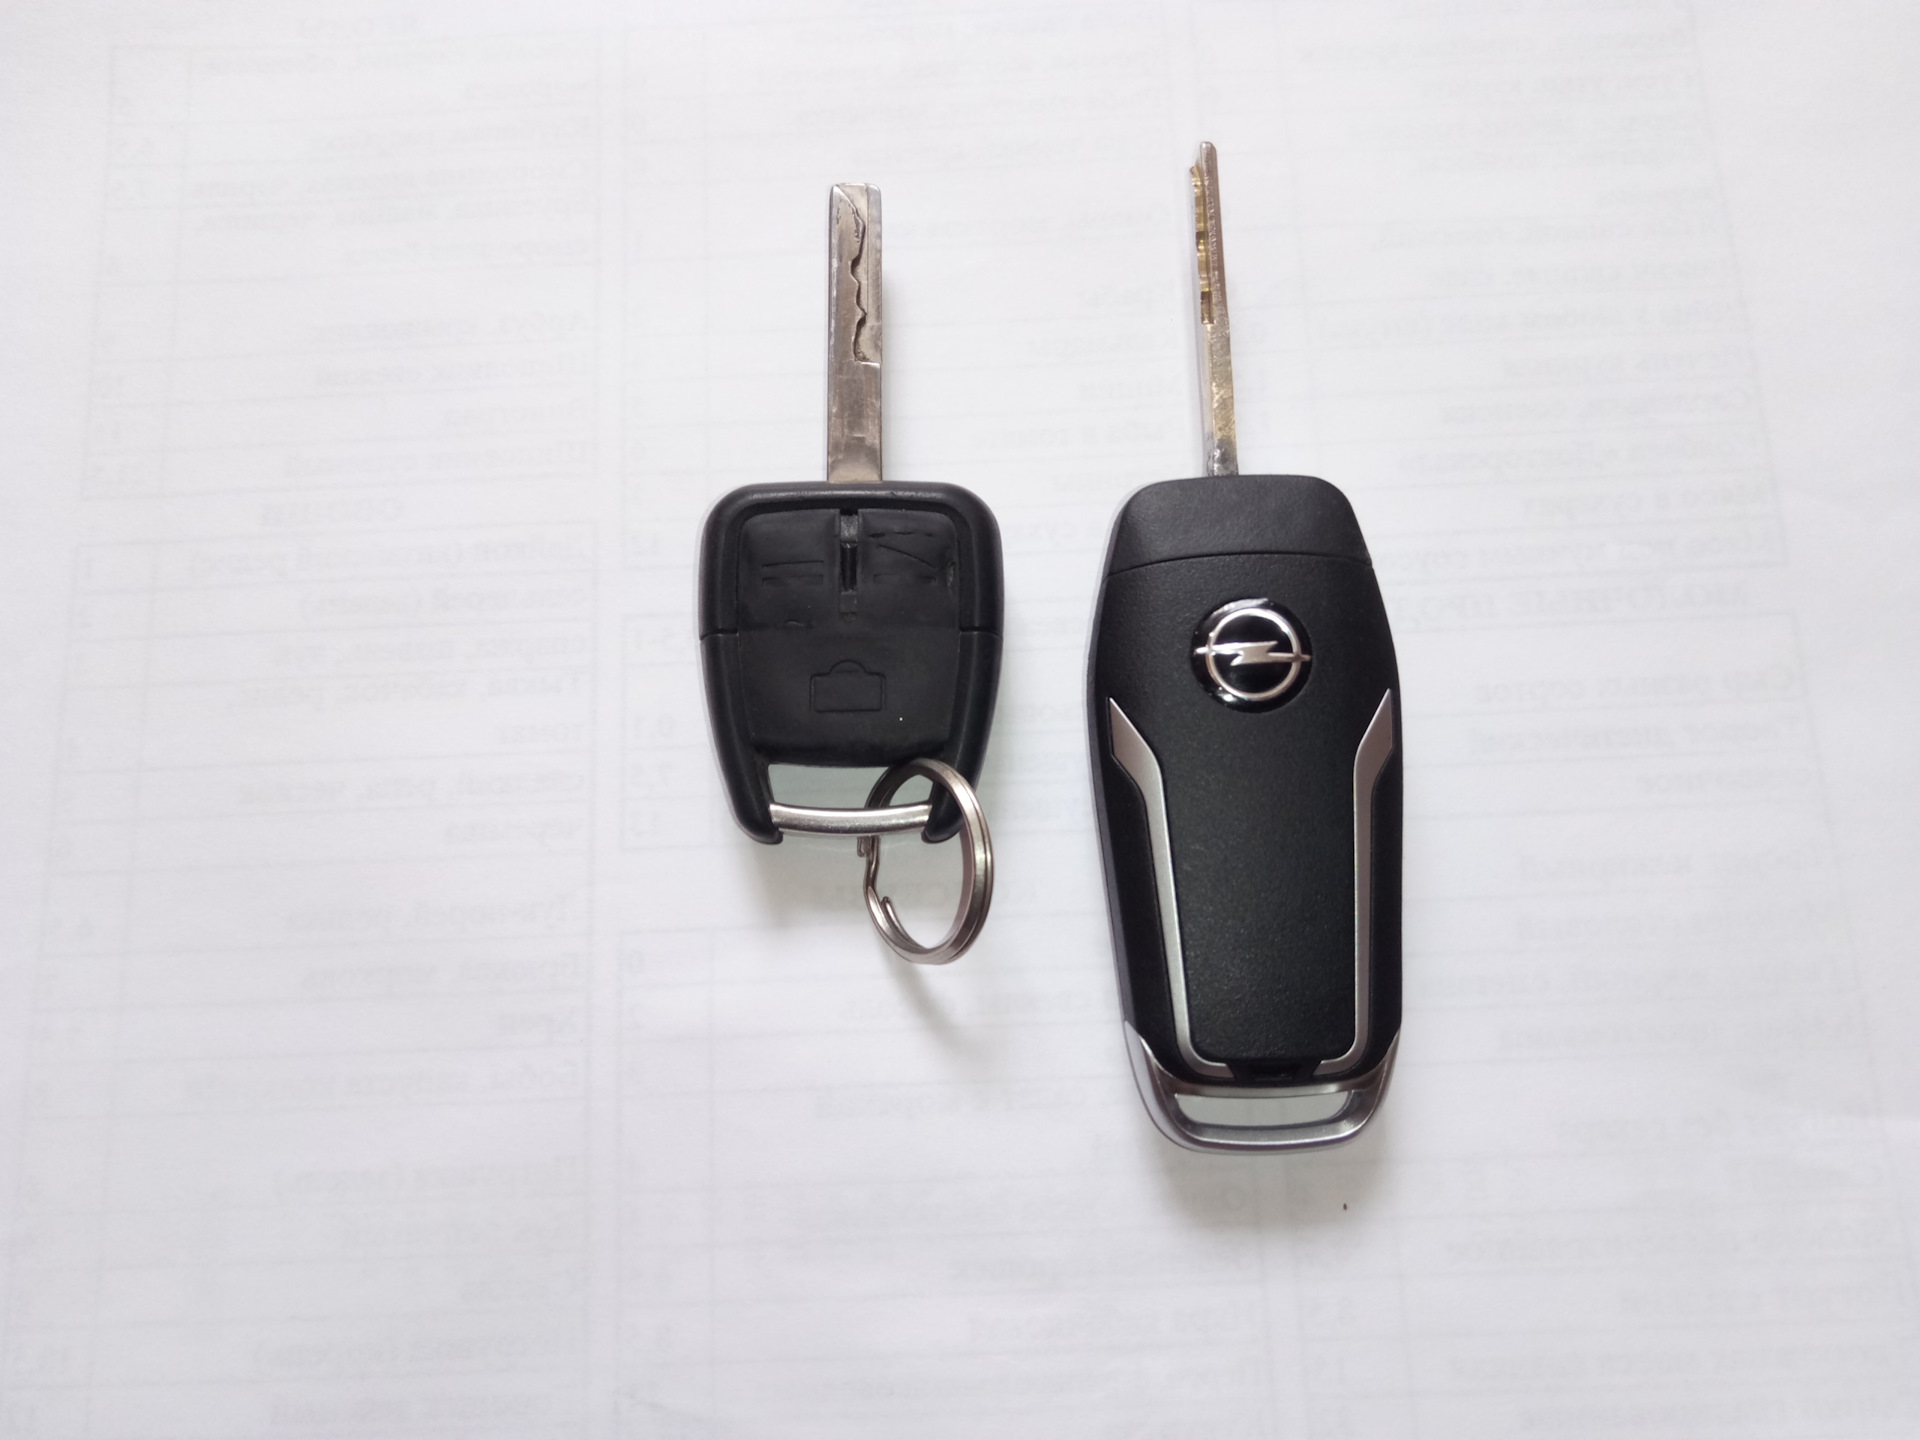 Ключ вектра б. Ключ Опель Вектра с 2003. Жало выкидного ключа hu39. Opel Vectra b выкидной ключ. Выкидной ключ Опель.